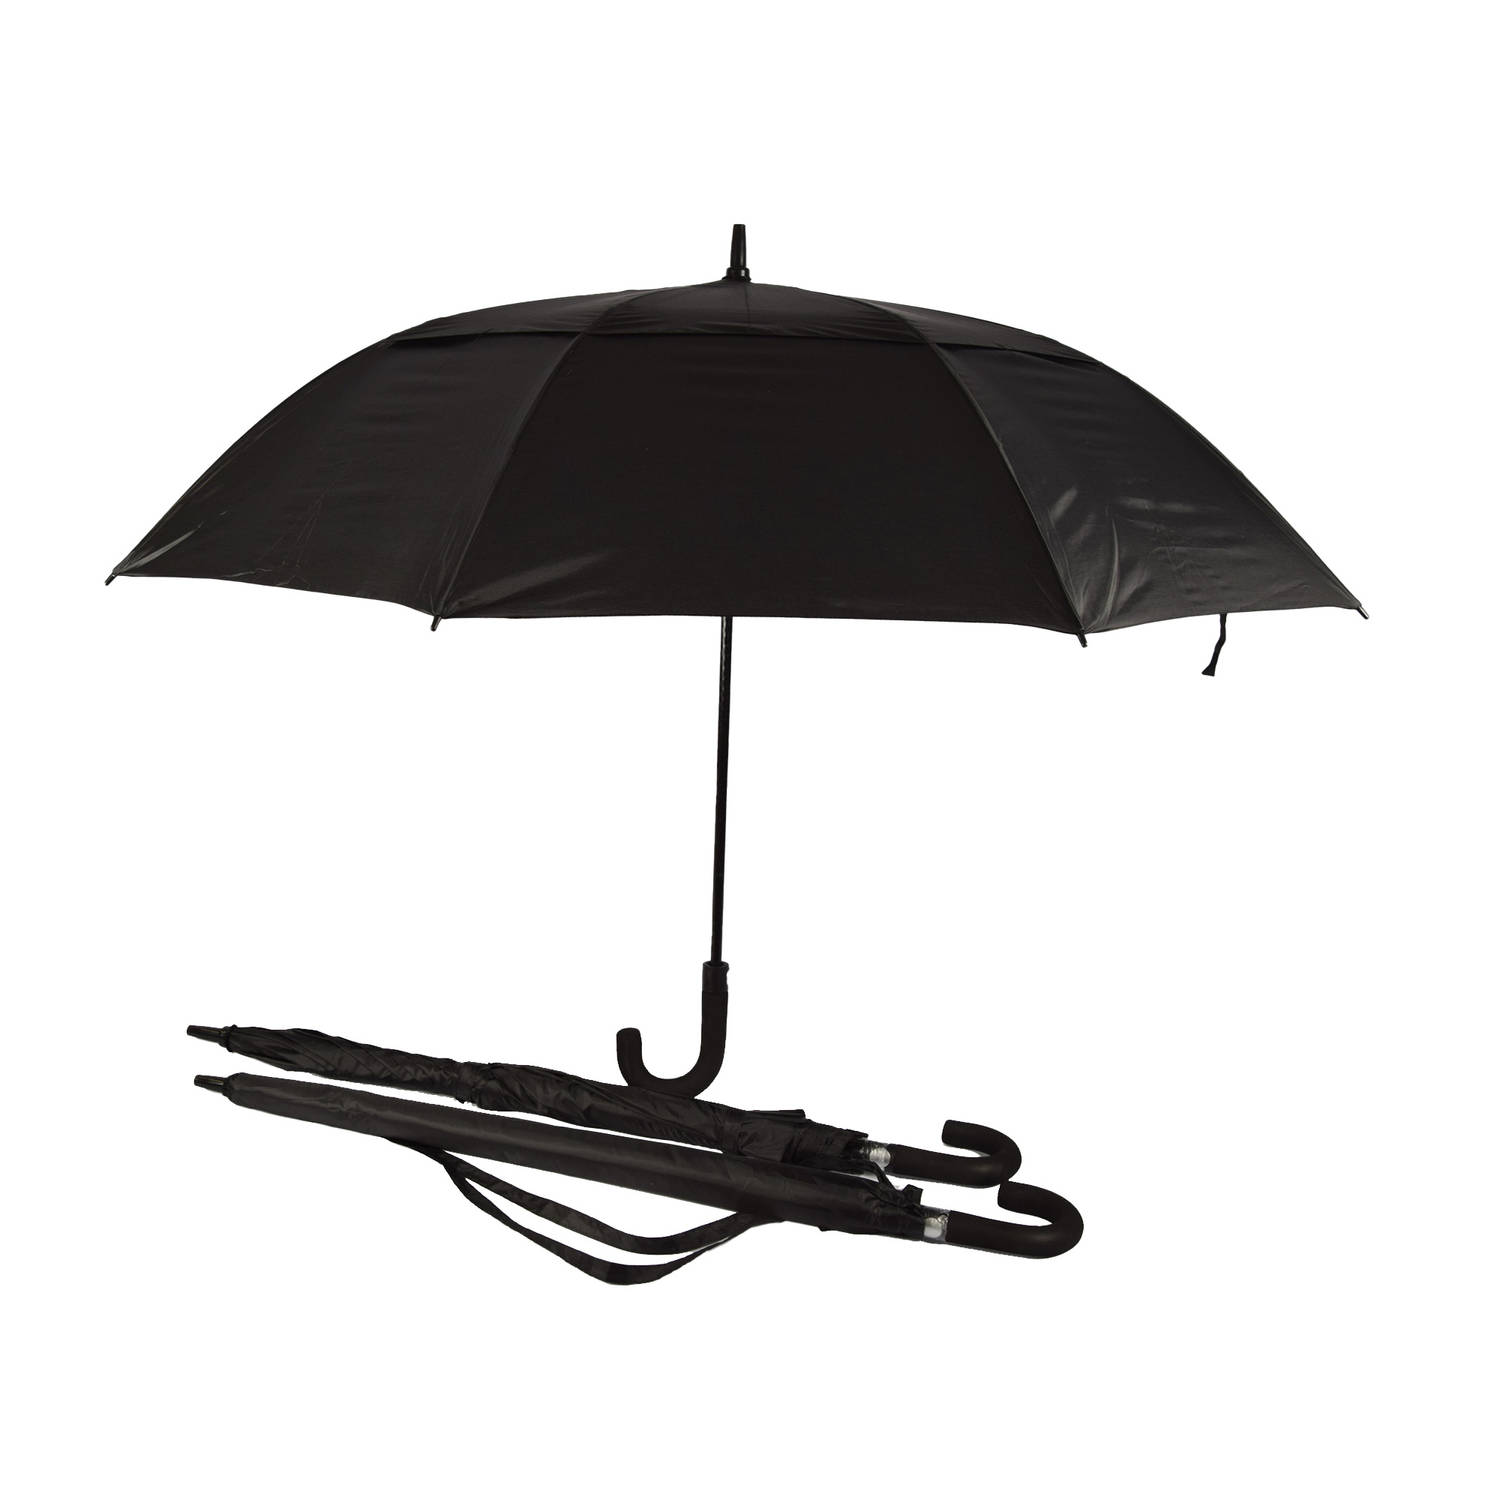 Discountershop Set van 3 Automatische Paraplu's - Opvouwbaar & Windproof - Zwart met Beschermhoes - 100cm Lengte - 130cm Diameter - Inclusief Paraplutas met Handgreep